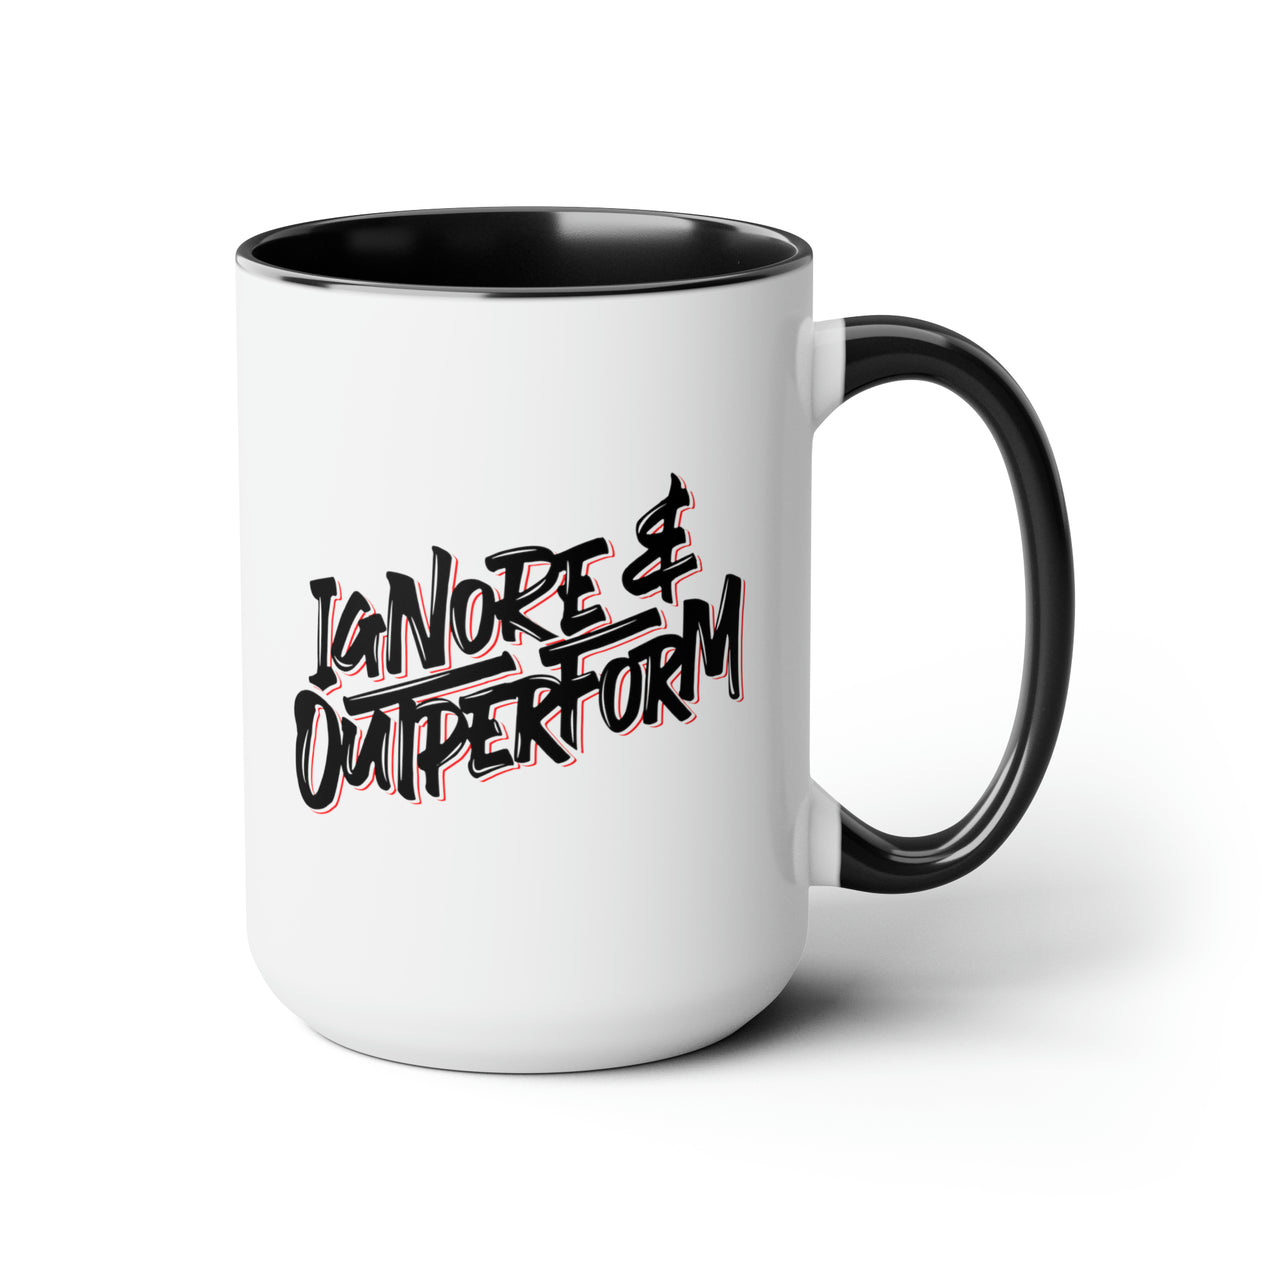 Ignore & Outperform Mug